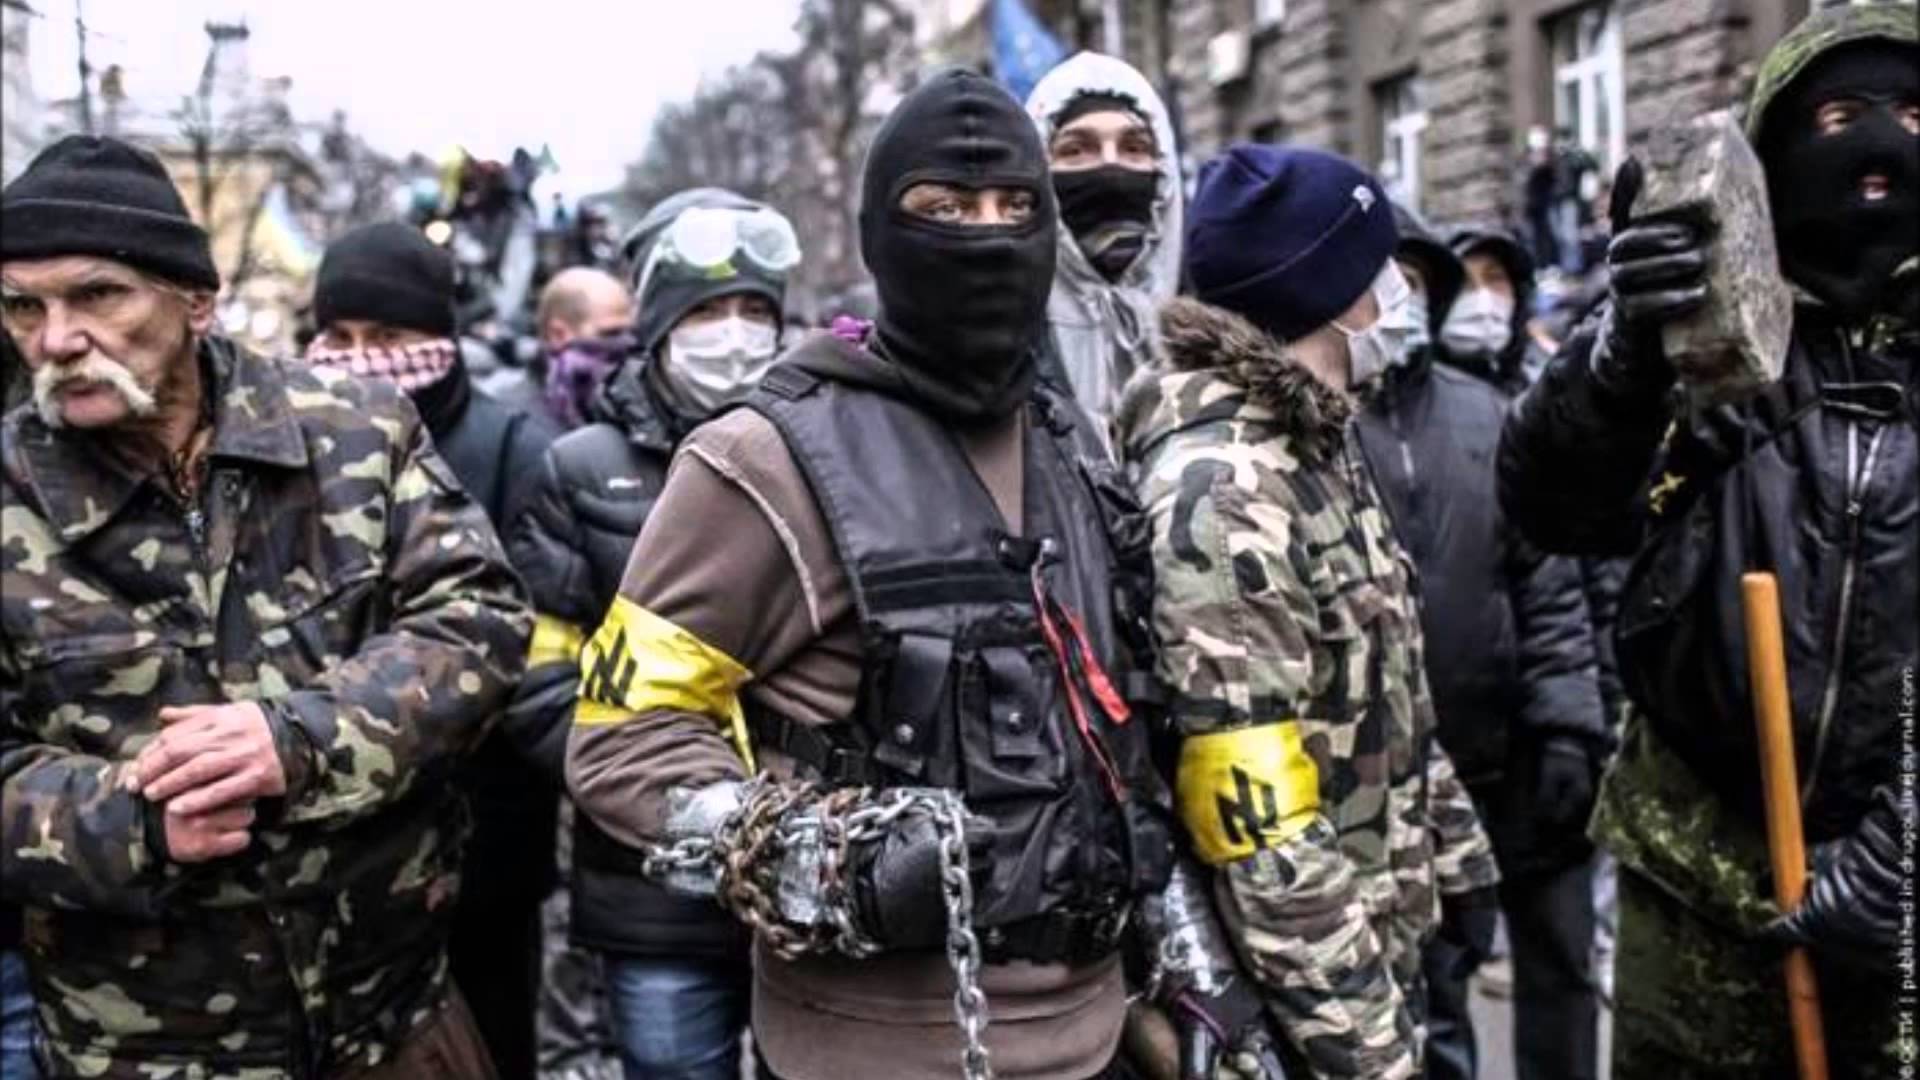 ukraine rechter sektor deustche werte streiter fuer deutschtum und eine saubere rasse rassisten neonazis gewaltbereite vollpfosten Idioten